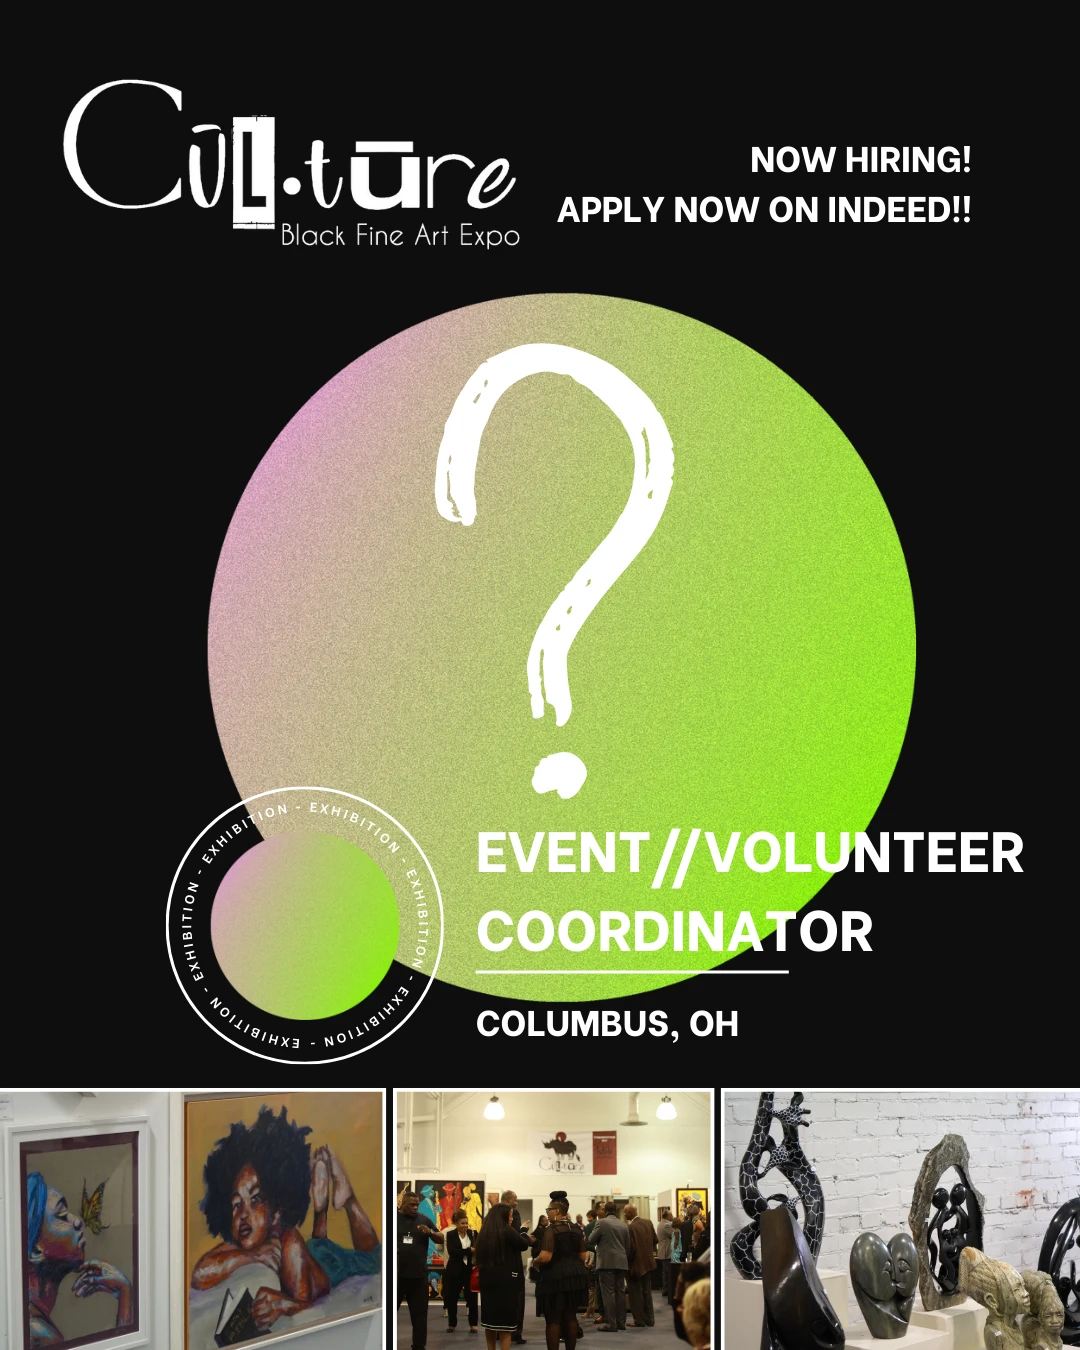 221-culture-volunteer-job-ad-17129330272575.png